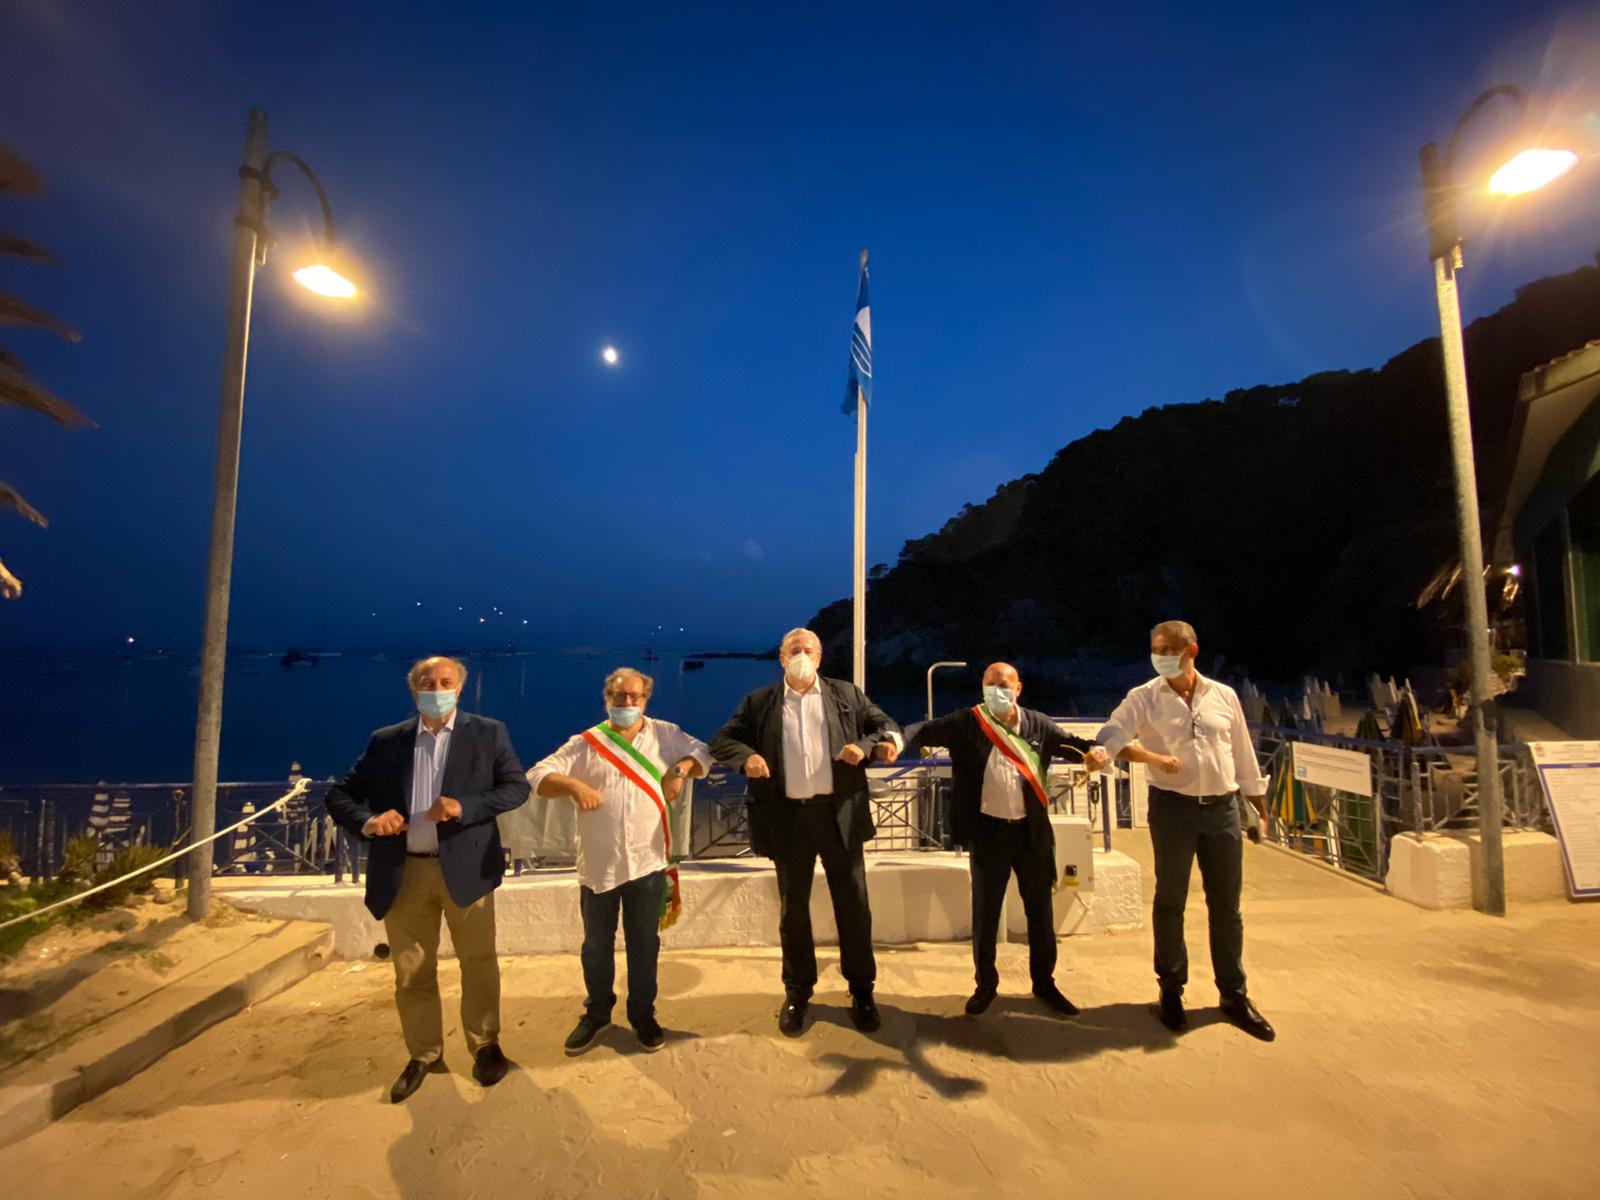 Galleria Bandiera Blu 2020 alle Isole Tremiti  Emiliano: “in Puglia grande risultato, siamo orgogliosi” - Diapositiva 8 di 8